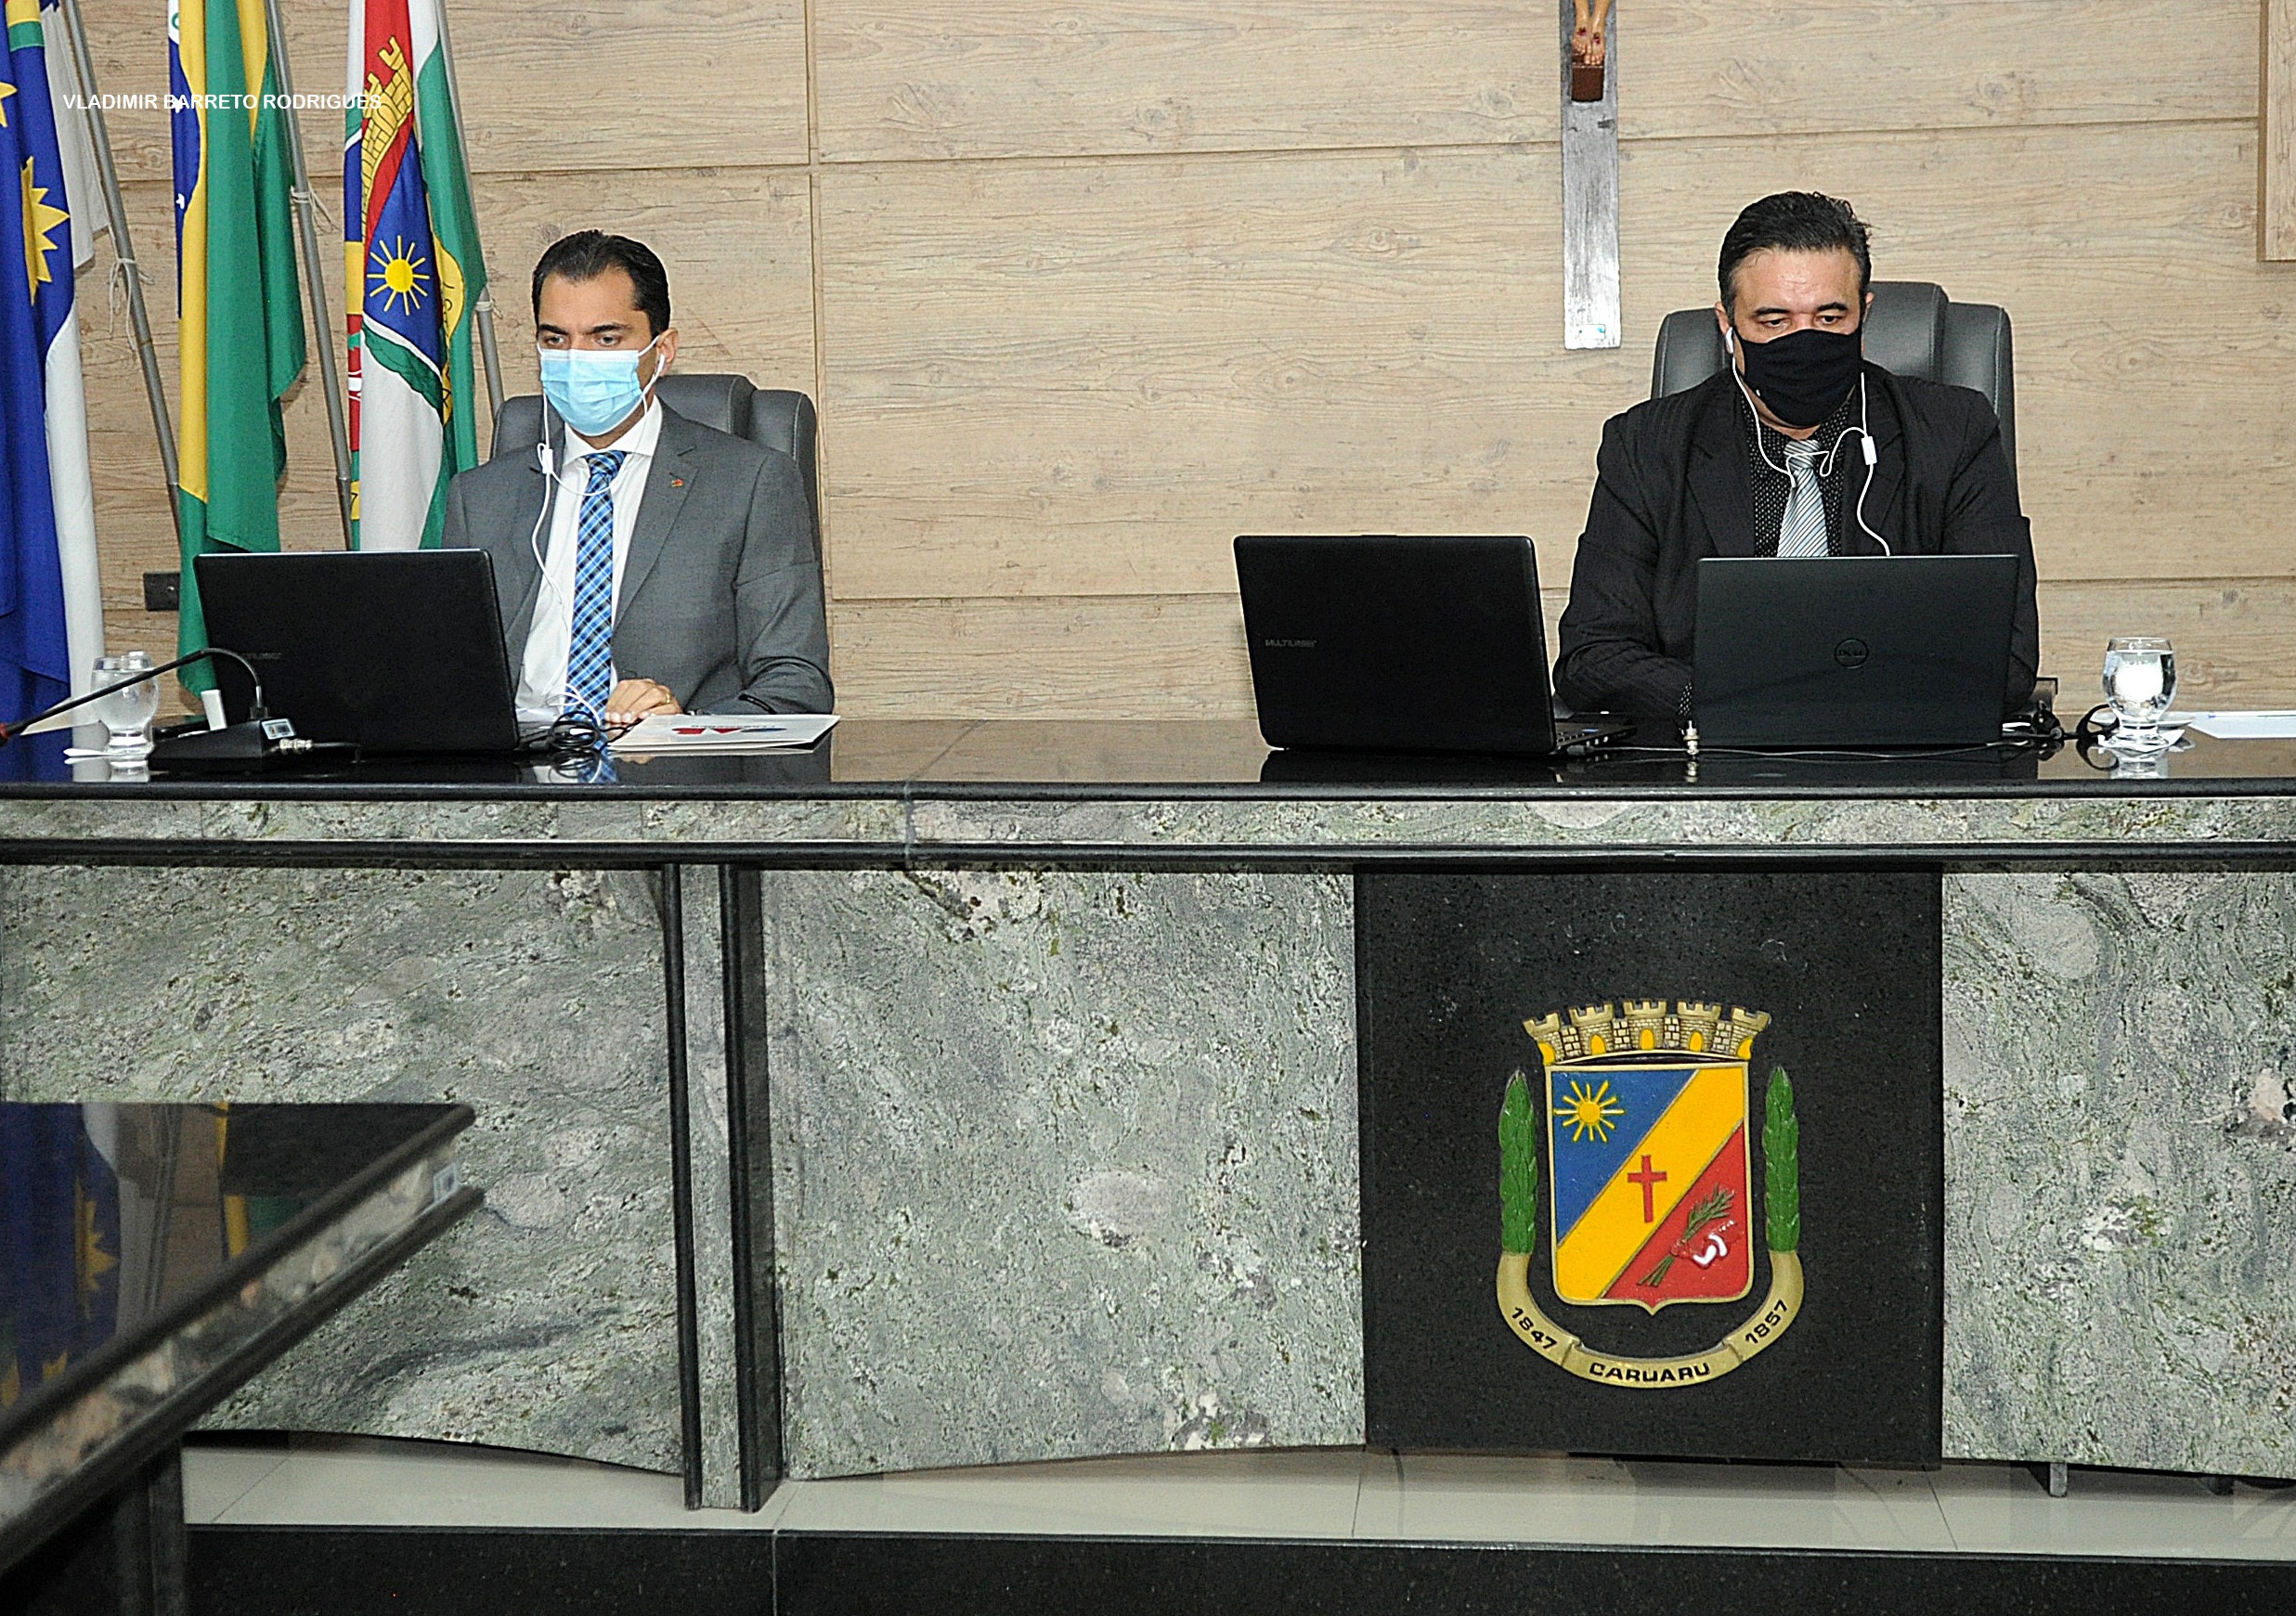 Desinstalação da 1ª Câmara Regional de Caruaru foi discutida em Audiência Pública na quarta-feira (30)